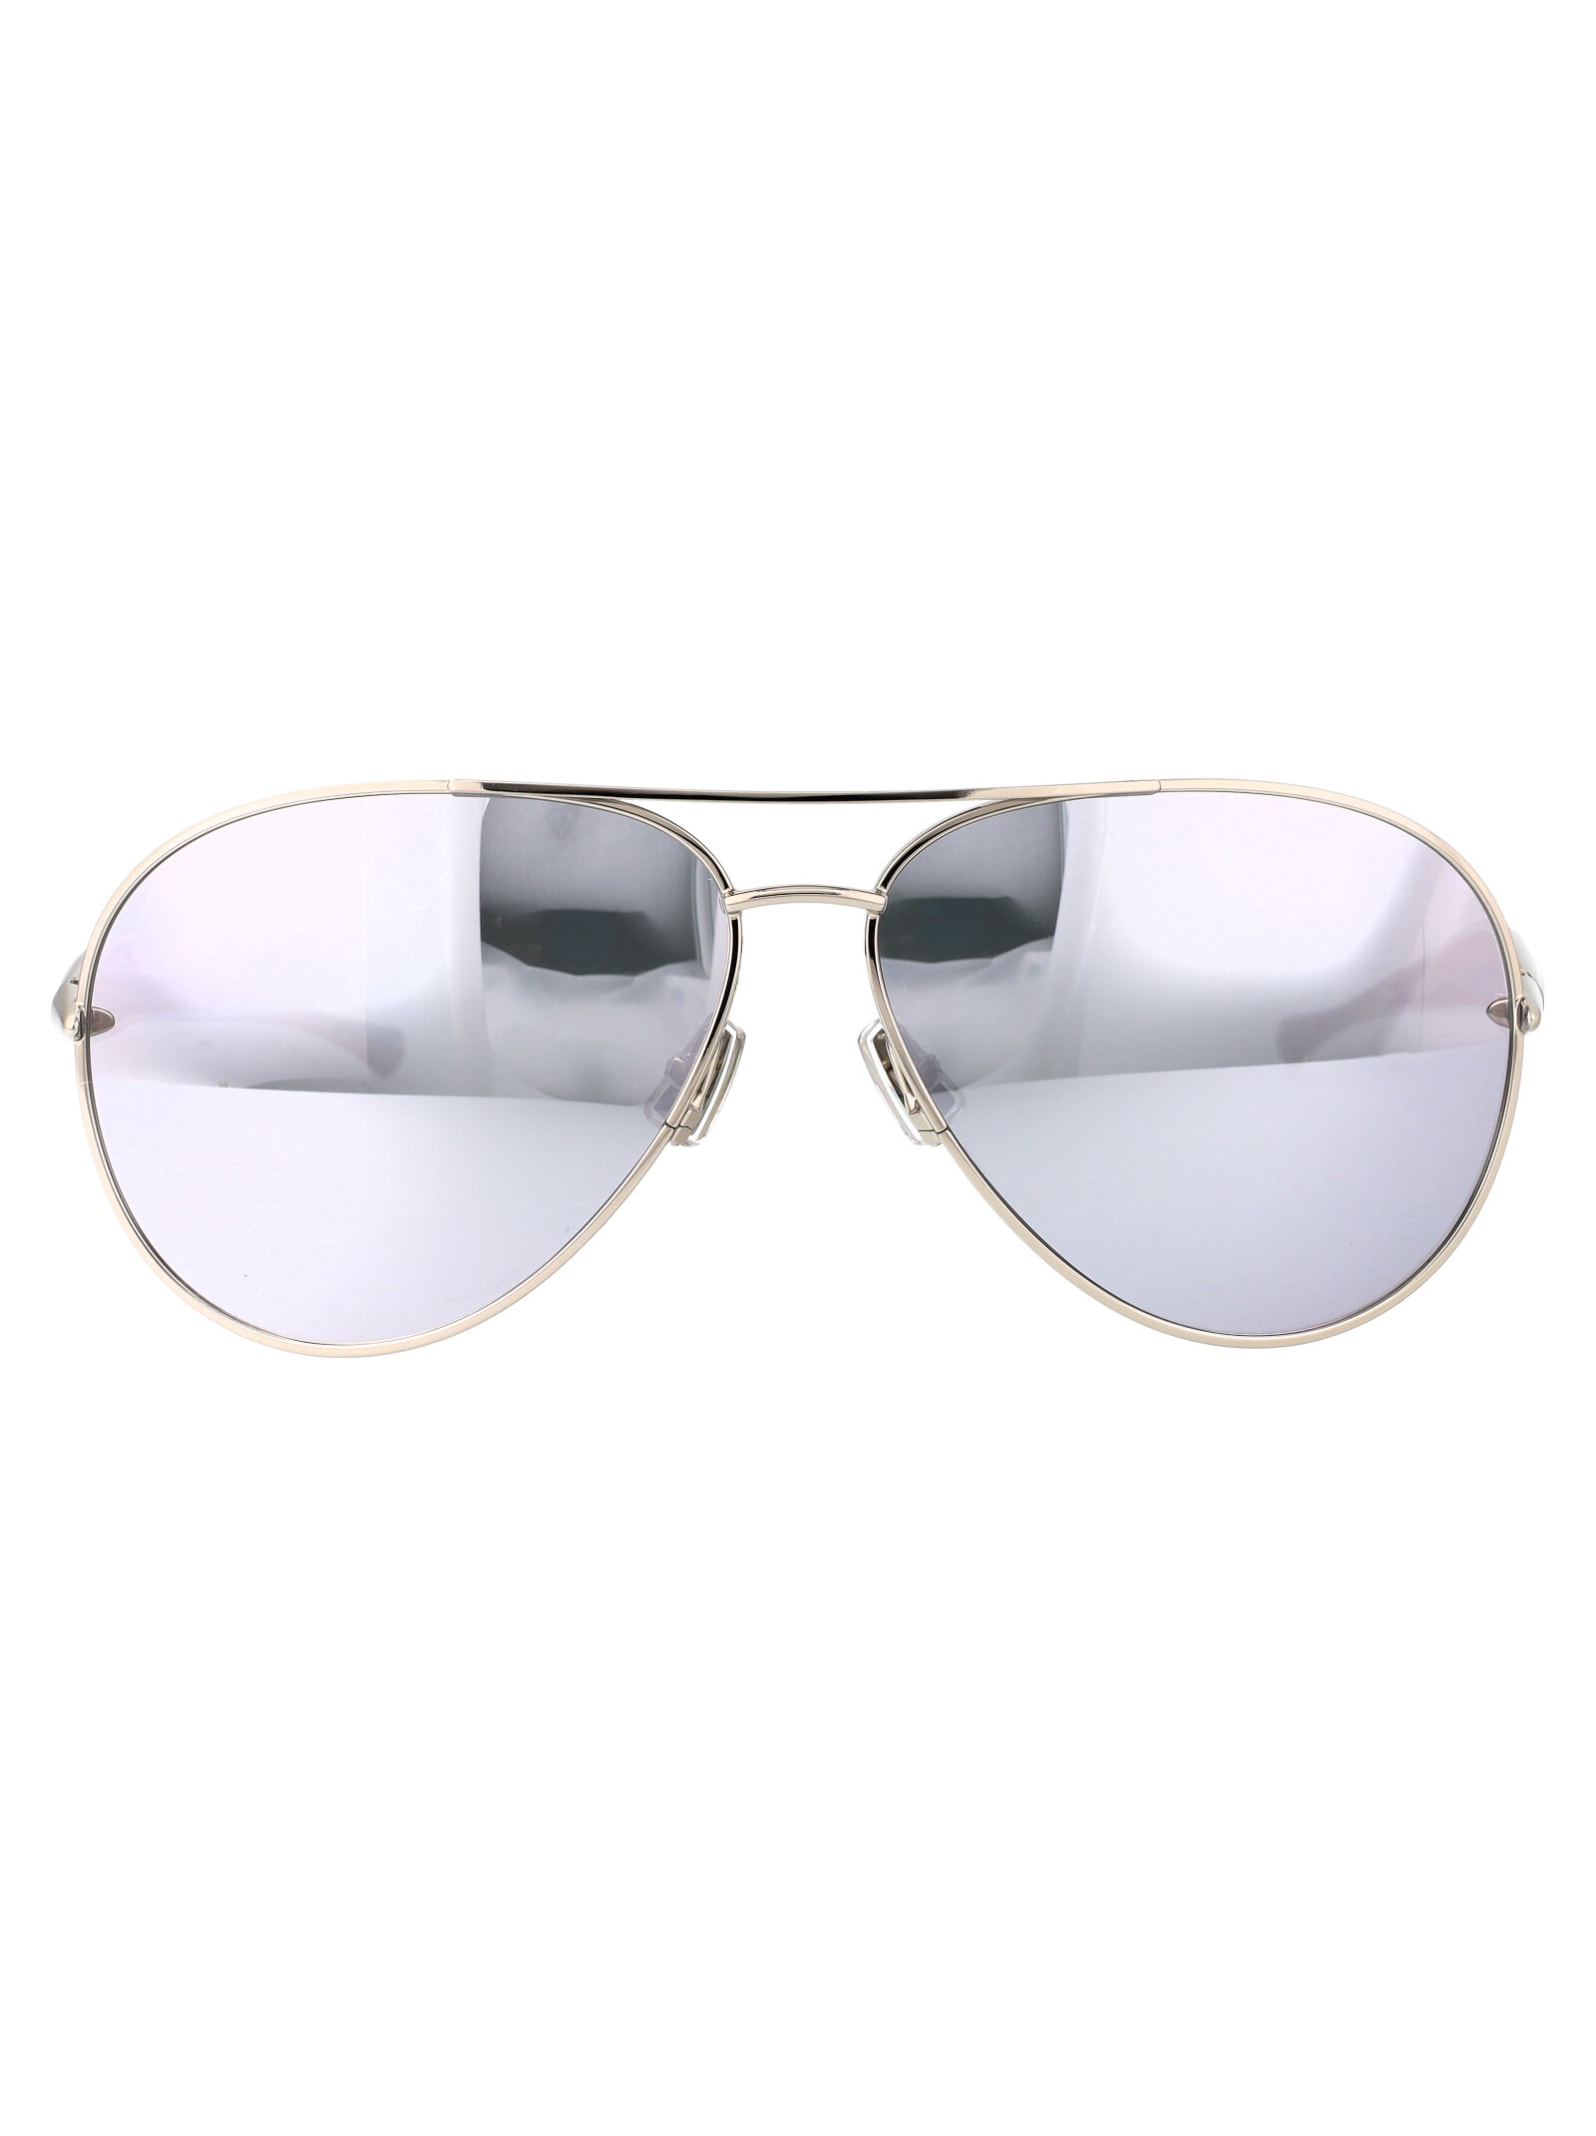 Bv1305s Sunglasses